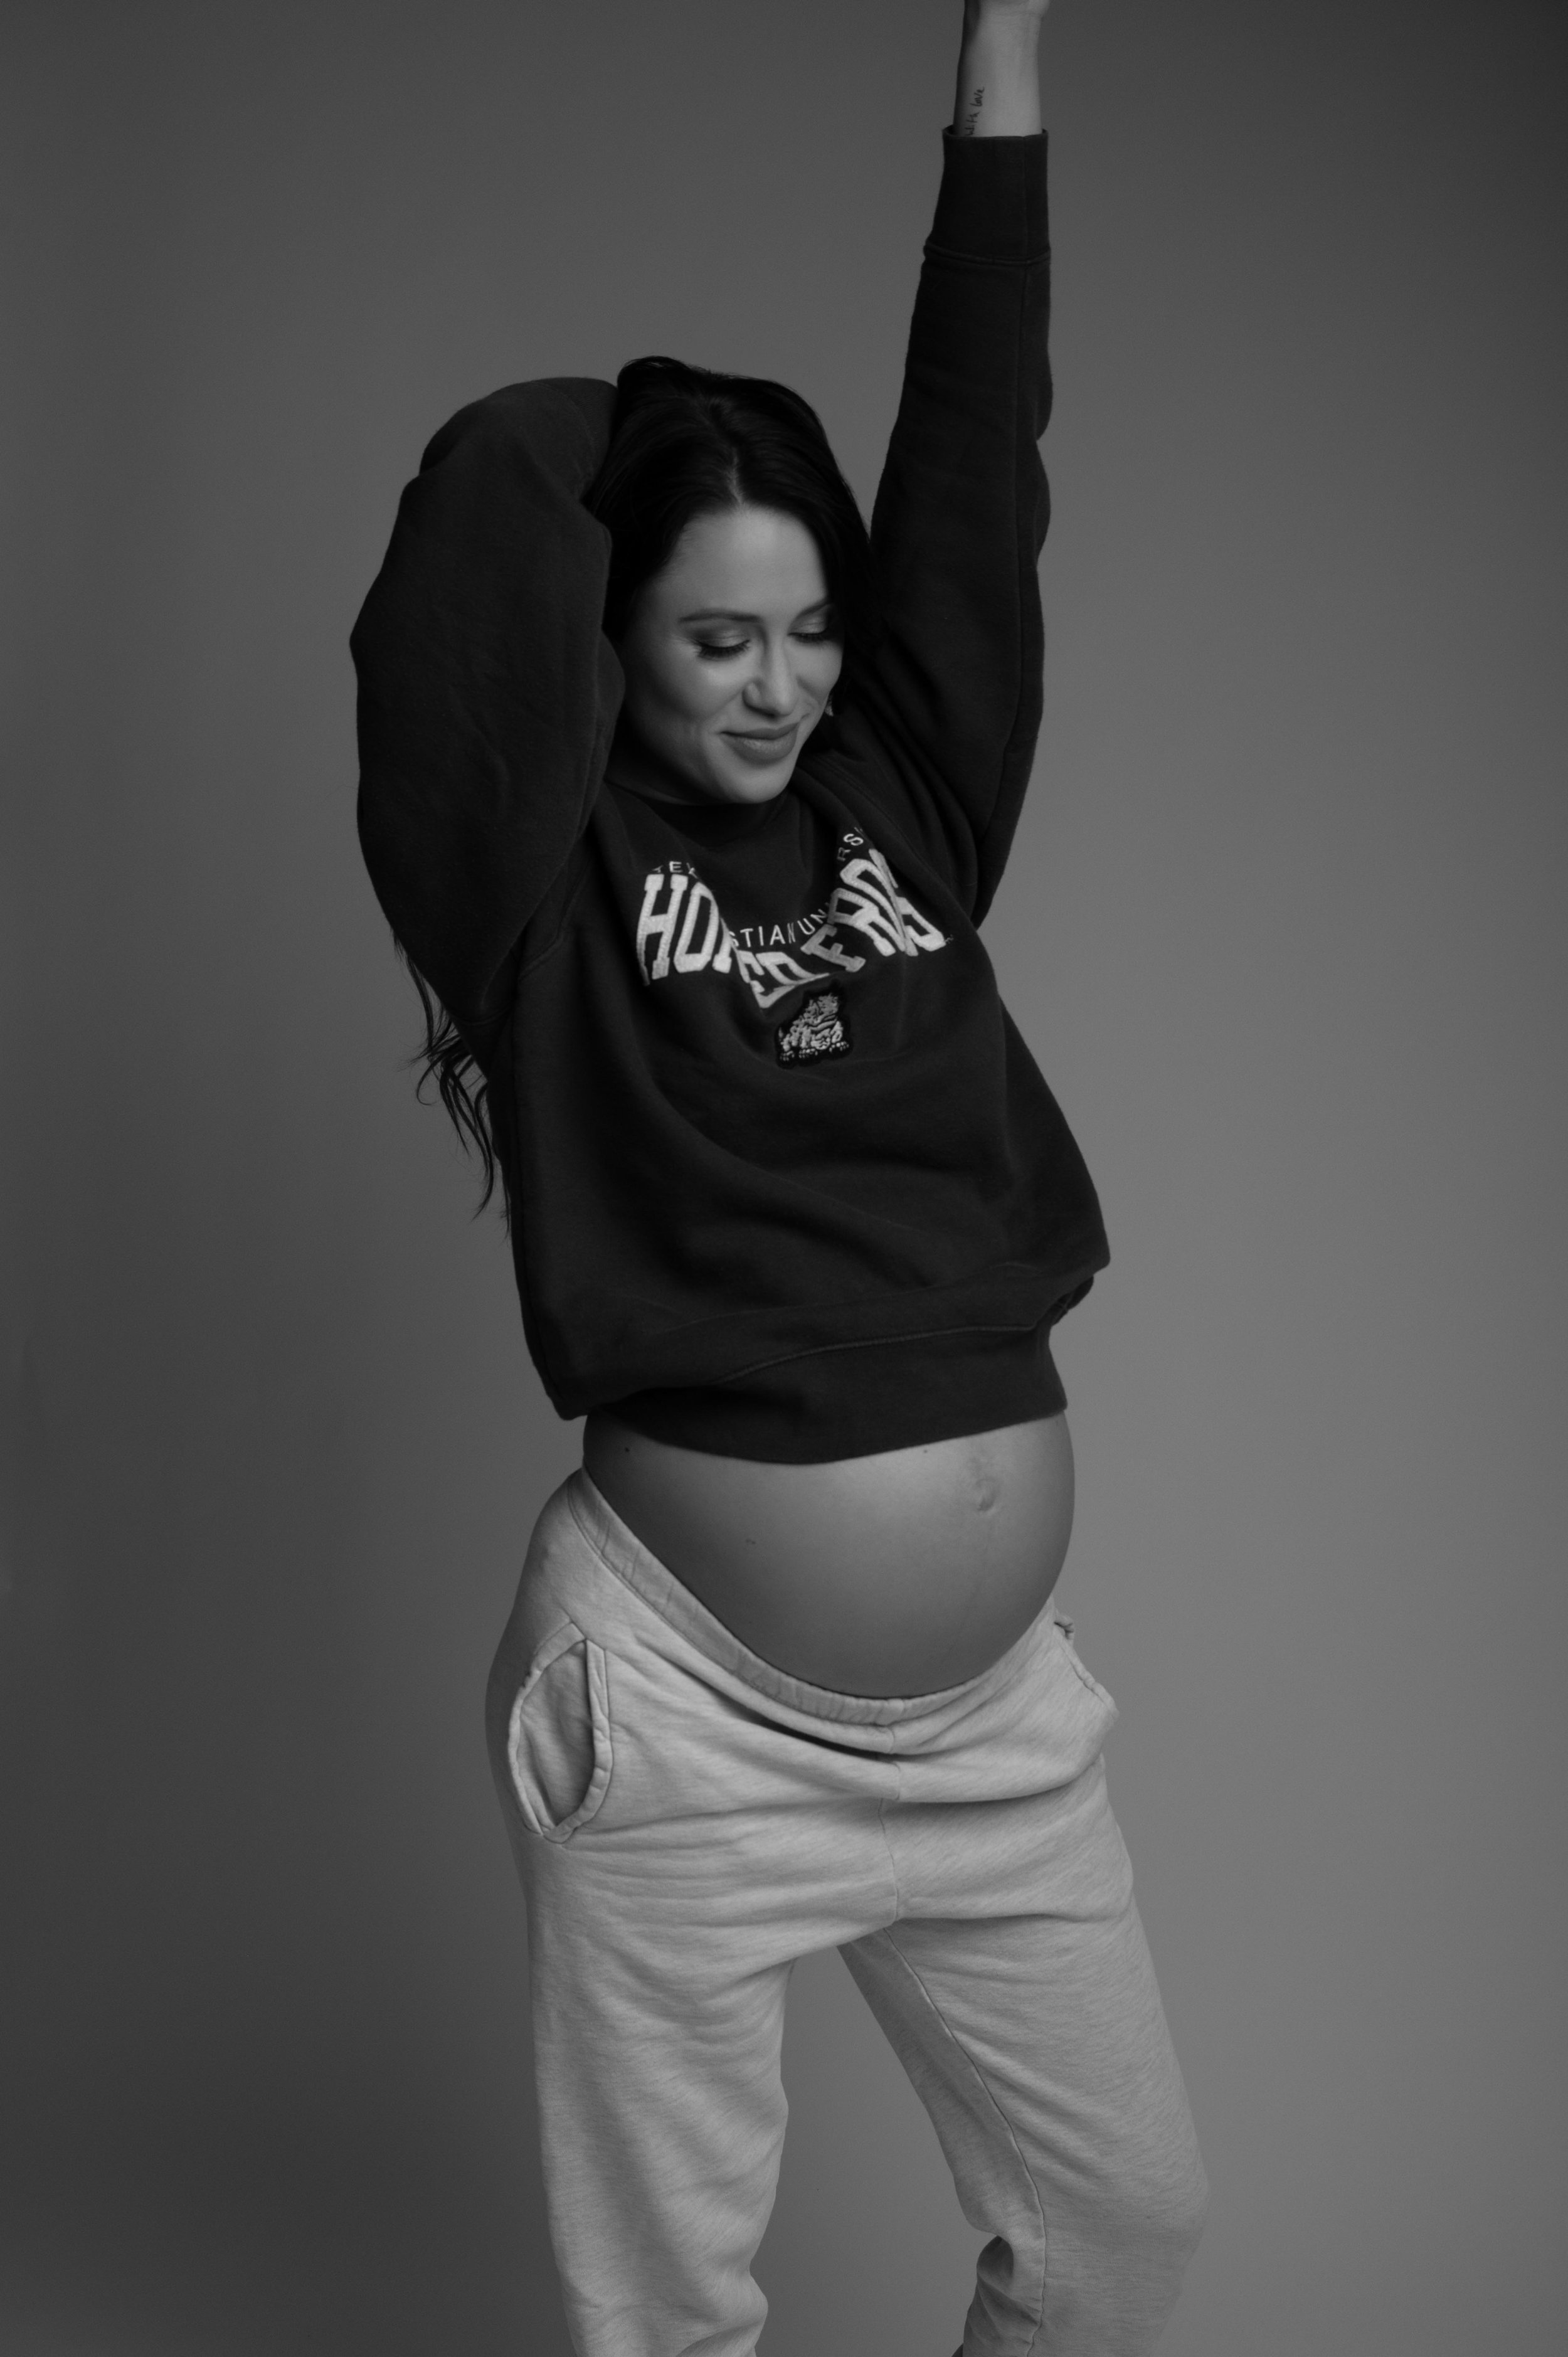 Calvin Klein Inspired Maternity Shoot000010.jpg